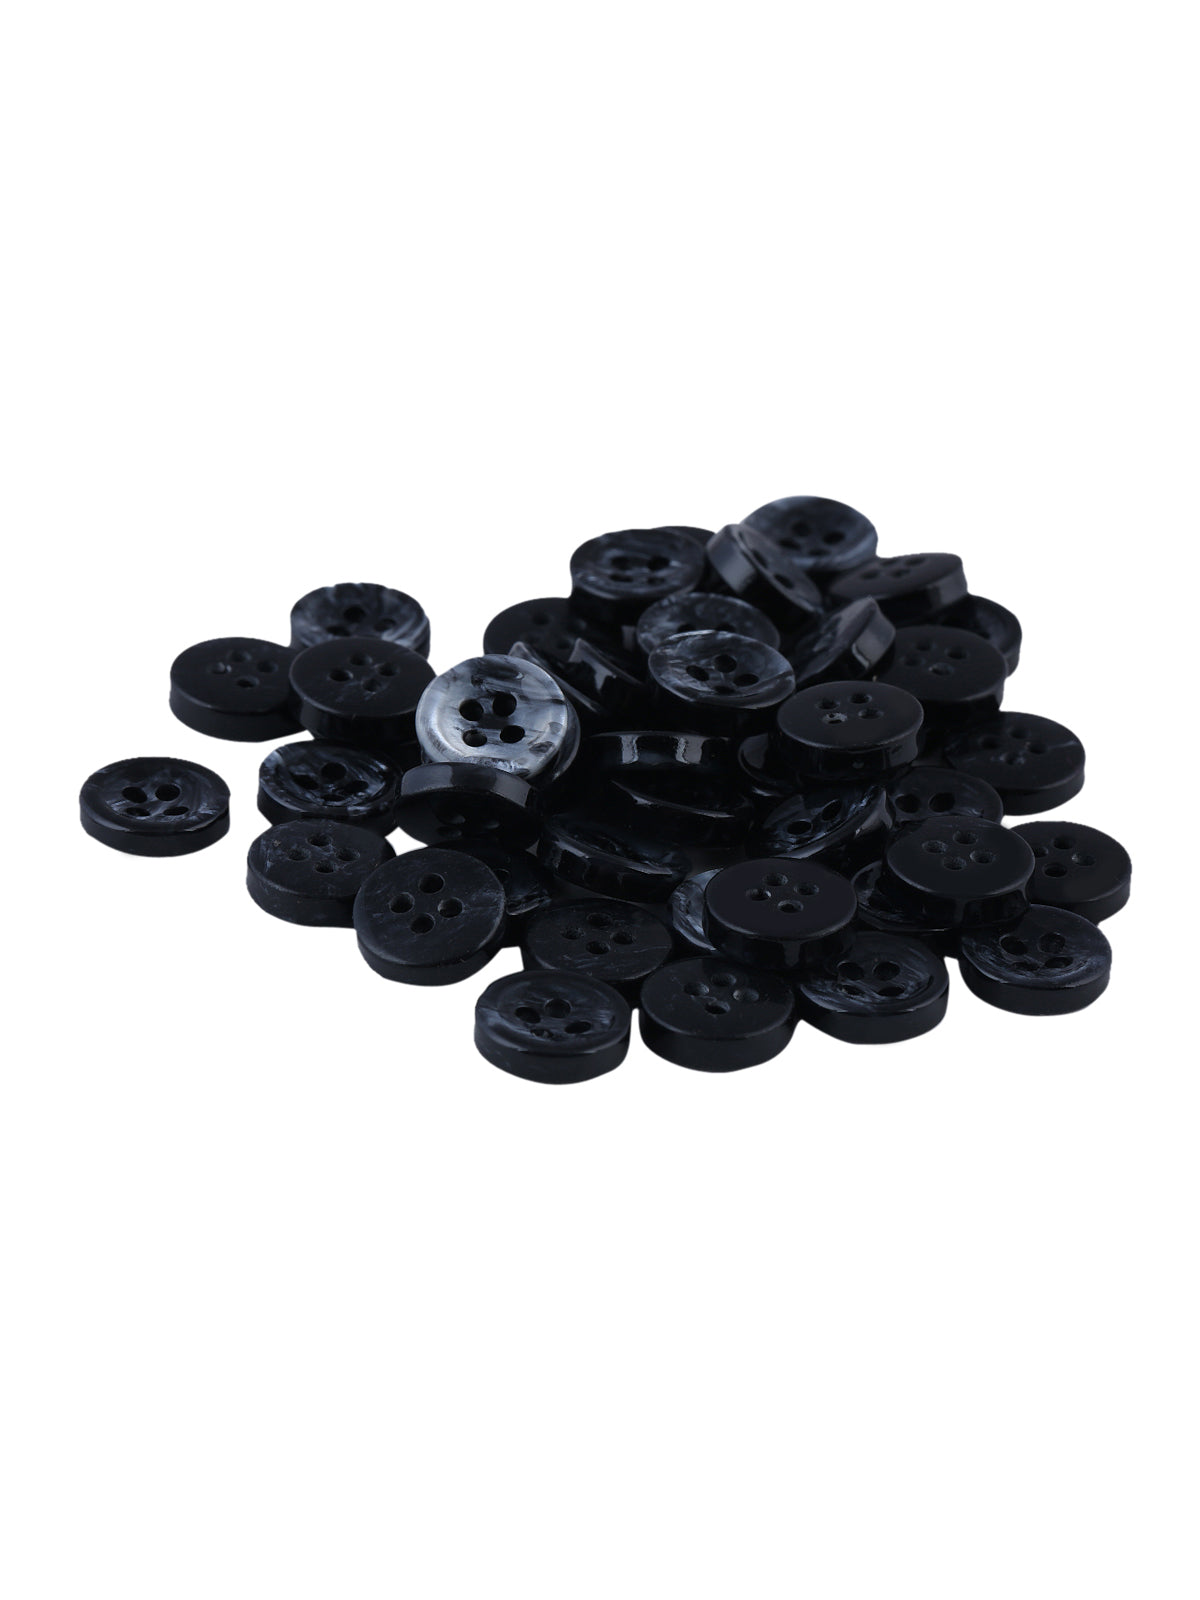 Decorative Black Marble Design 10mm Fancy Shirt Button